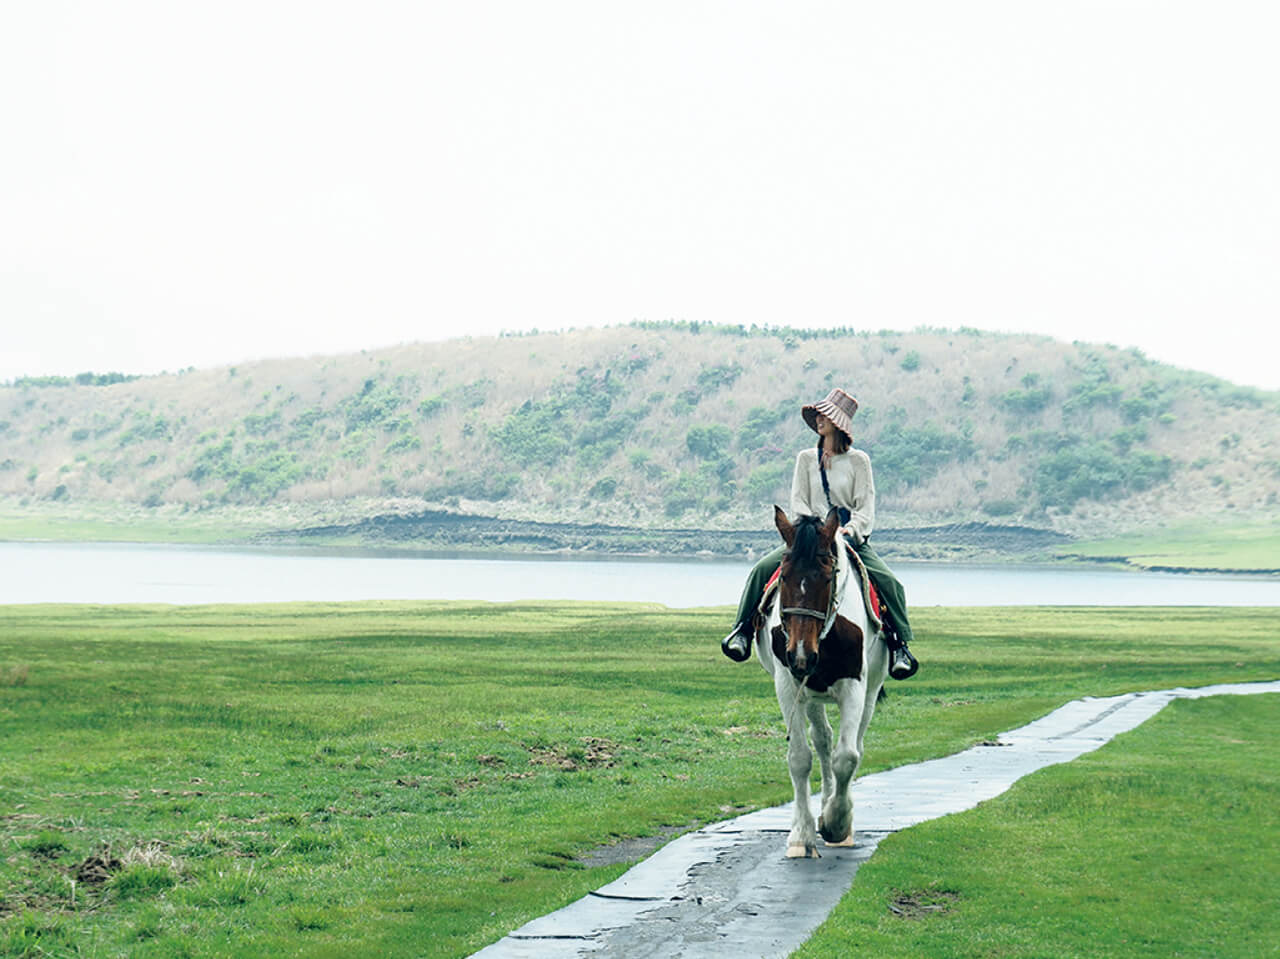 「阿蘇くじゅう国立公園の草千里ヶ浜で乗馬体験を。馬の背で揺られながら雄大な景色をゆったり眺めた贅沢な時間でした」（TB リヨンさん）